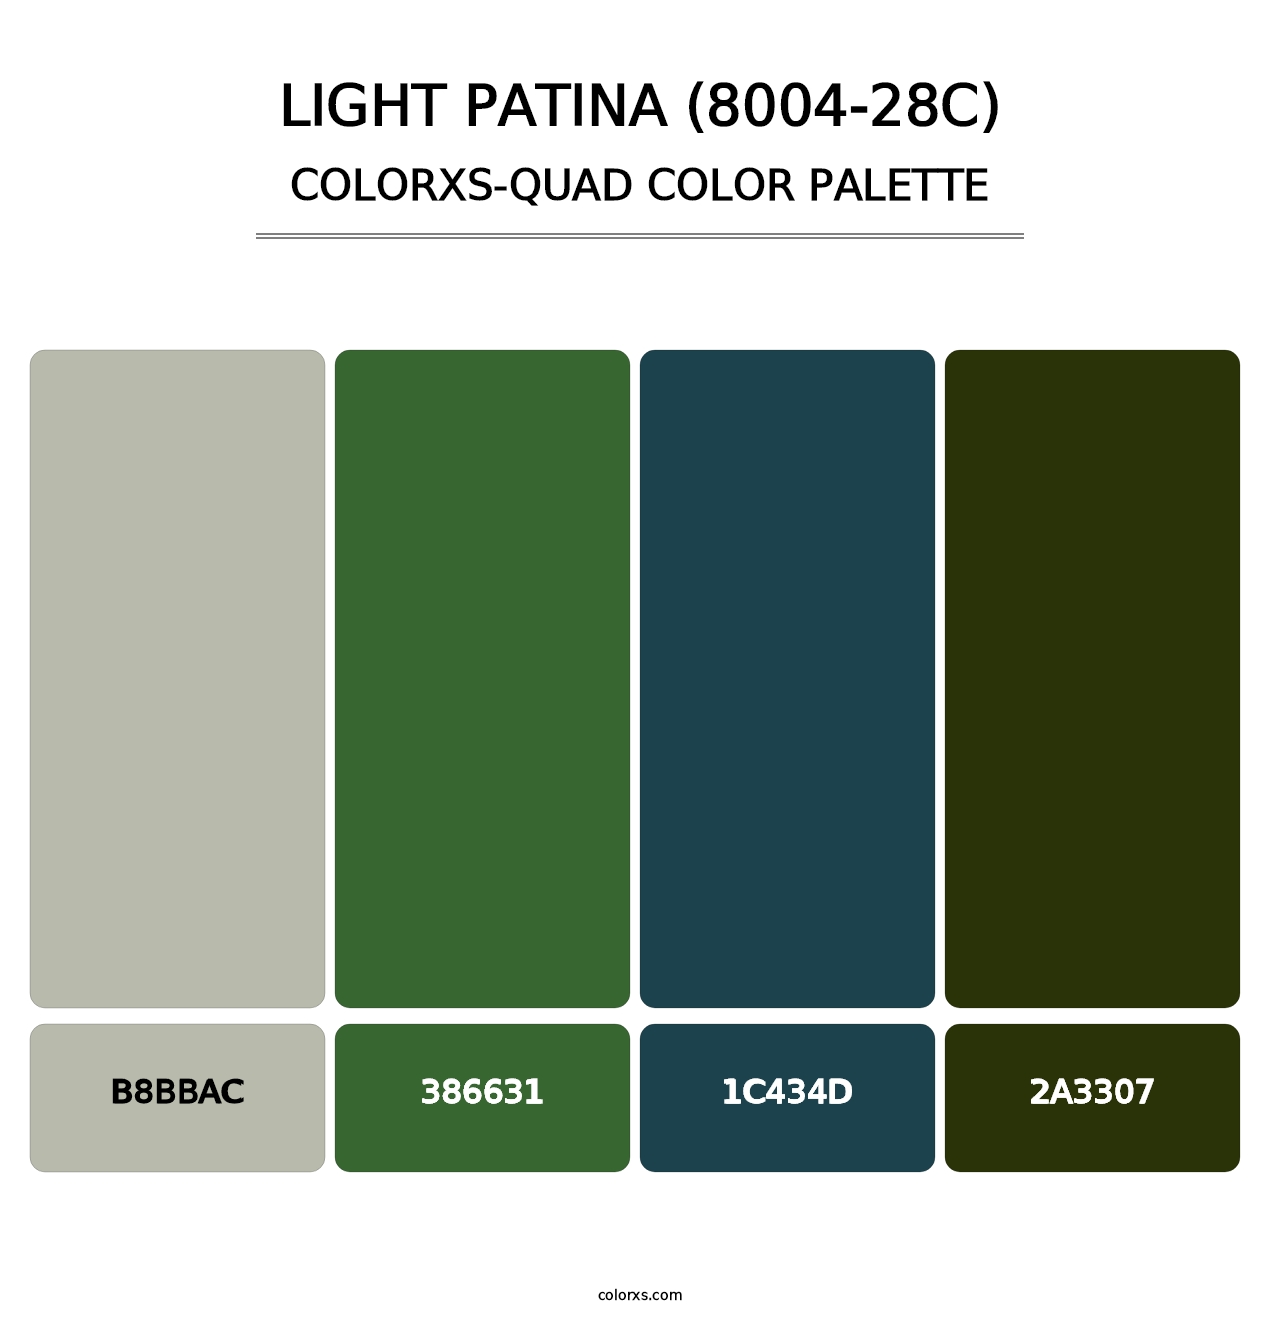 Light Patina (8004-28C) - Colorxs Quad Palette